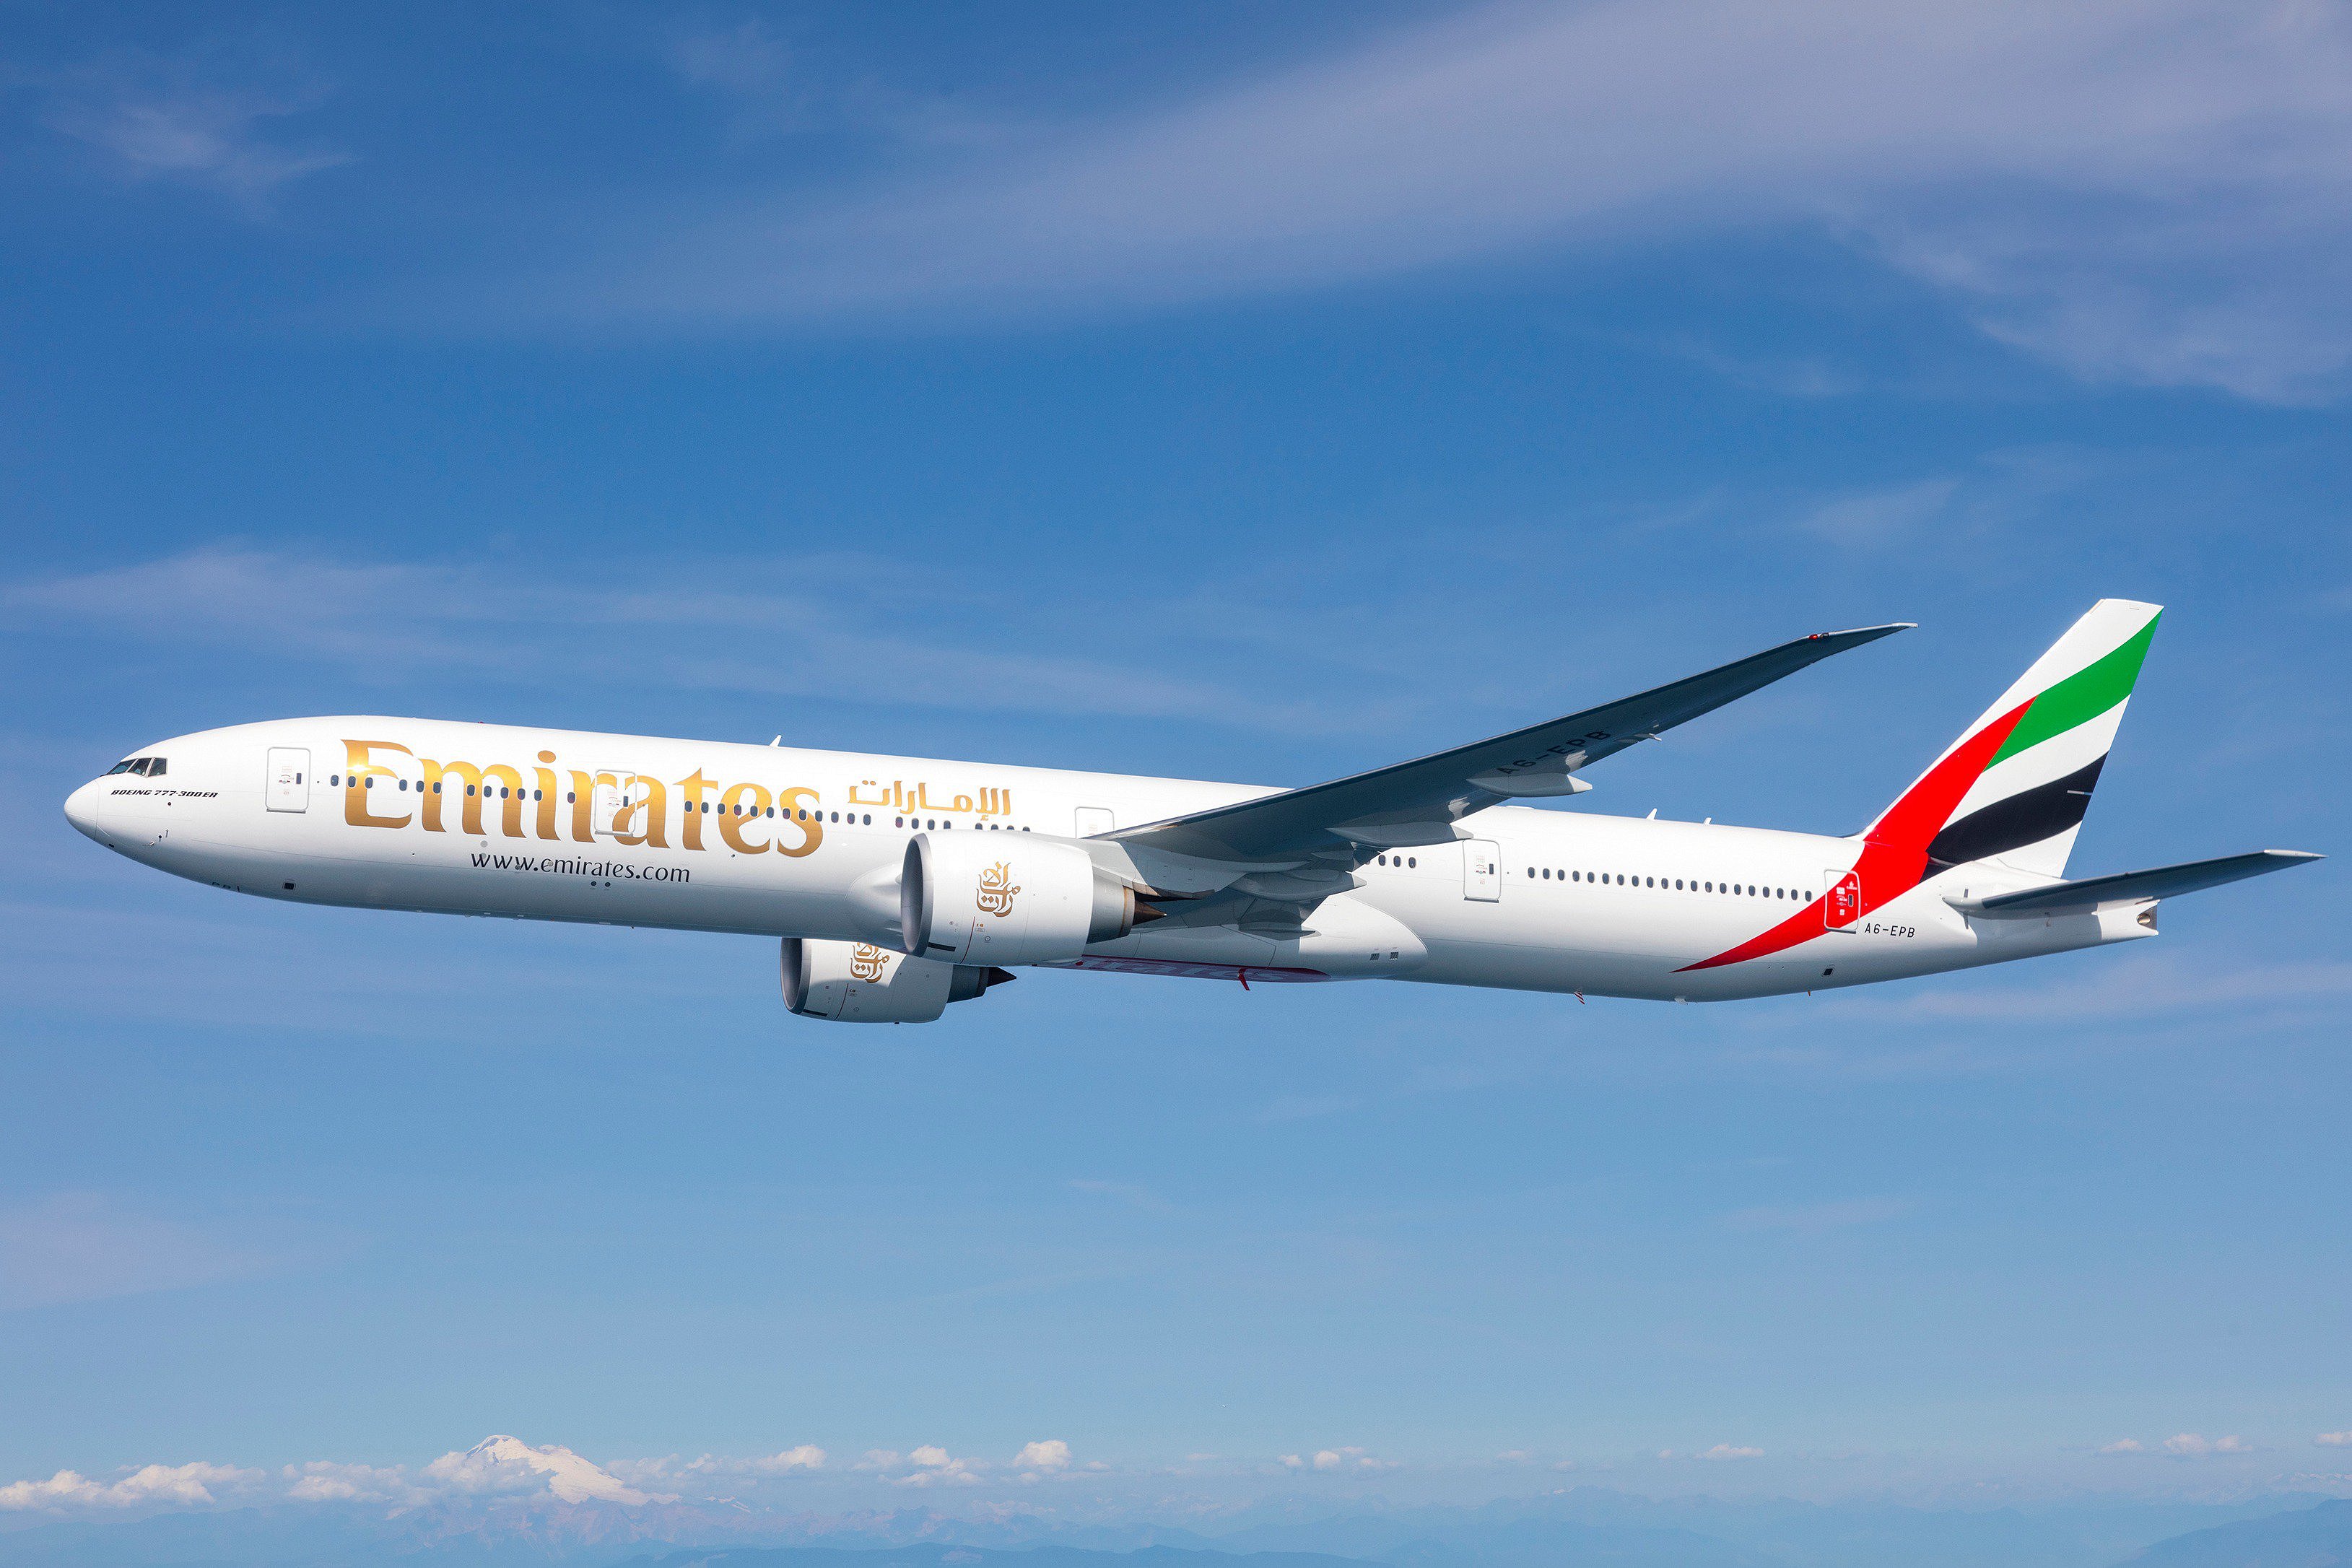 Сайт эмирейтс. Авиакомпания Дубай Эмирейтс. Боинг 777 арабские эмираты. А 330neo Emirates. Дубайская авиакомпания Emirates.